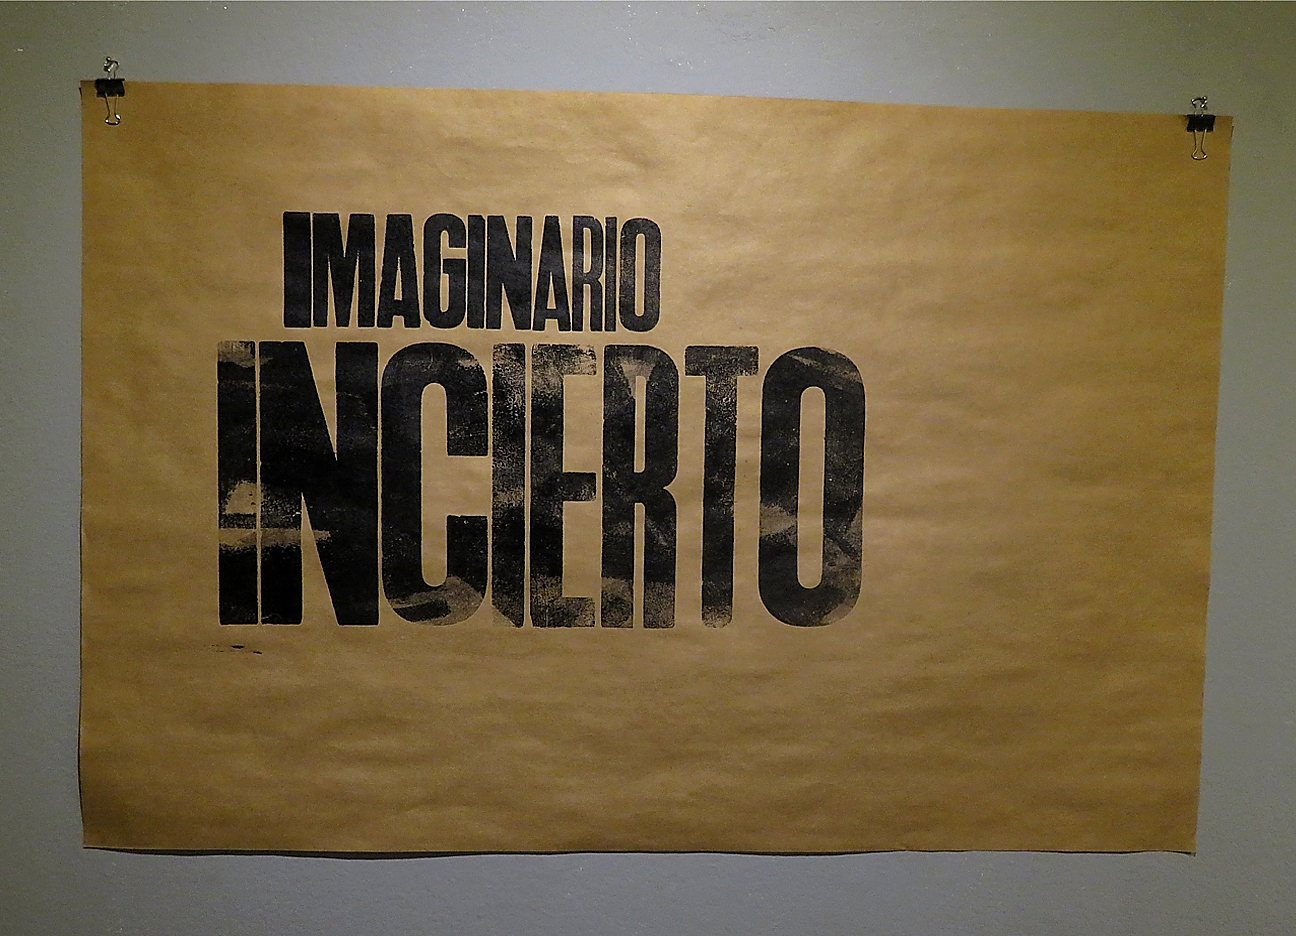 El delta y los imaginarios / Alejandro Meitin y Magia Negra Letterpress